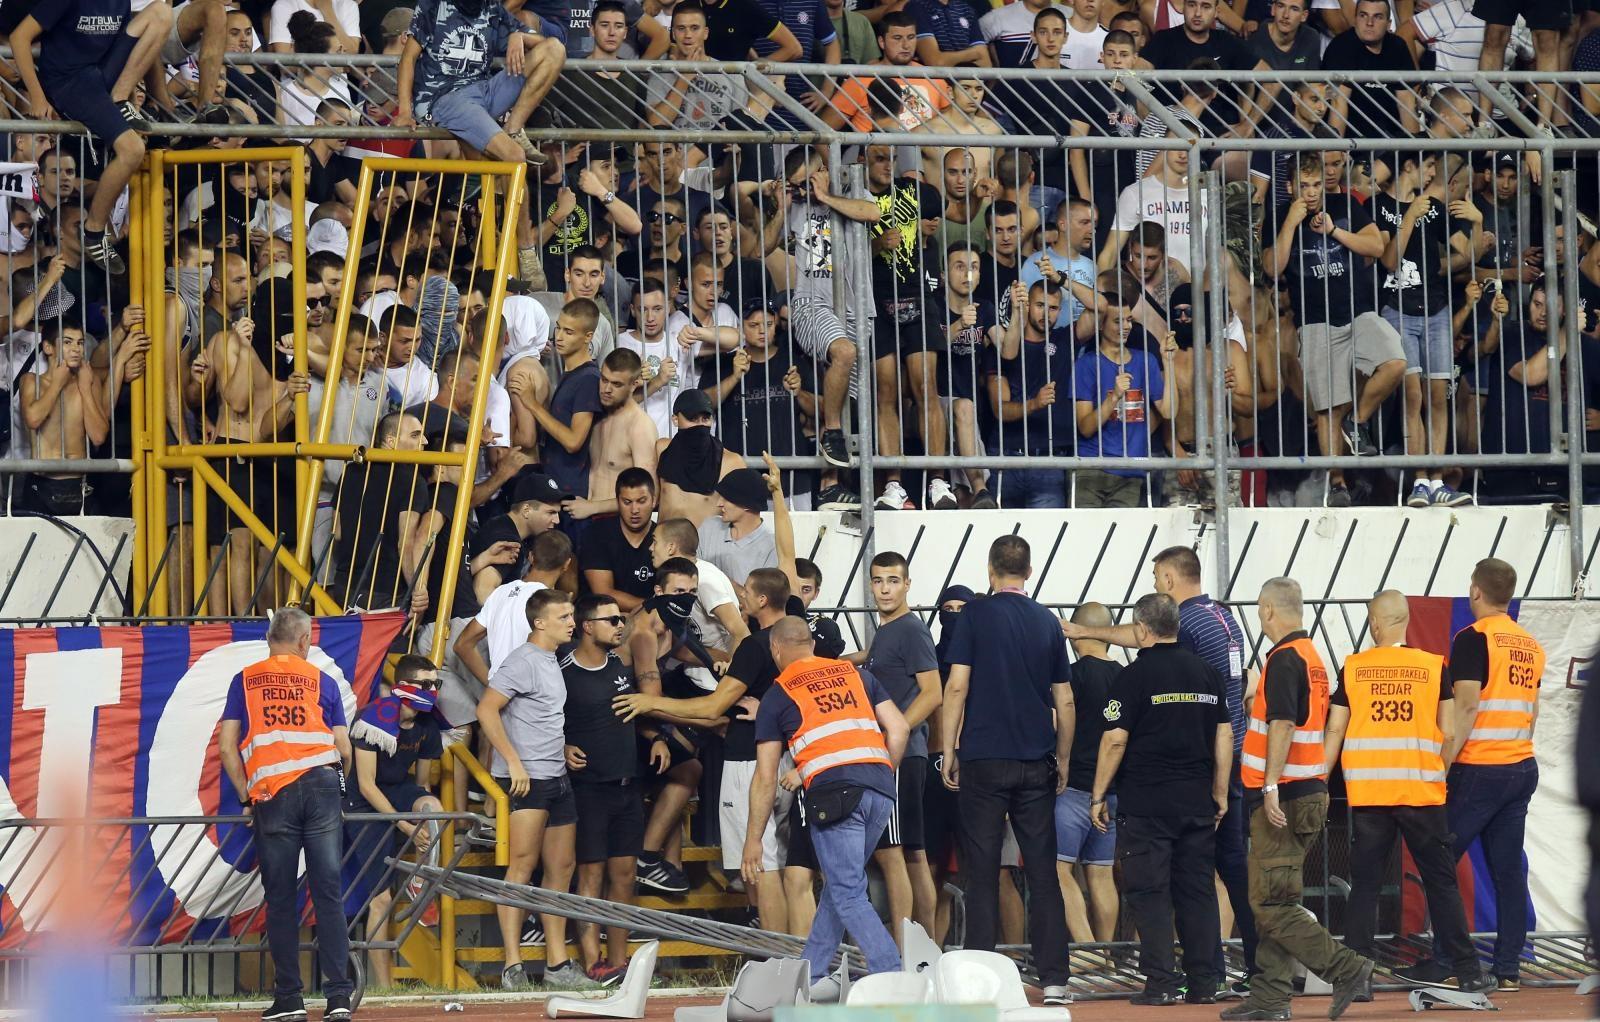 Splićani Nijemcu izbili bogatstvo iz ruku: Blamaža Hajduka oborila ludi tiket